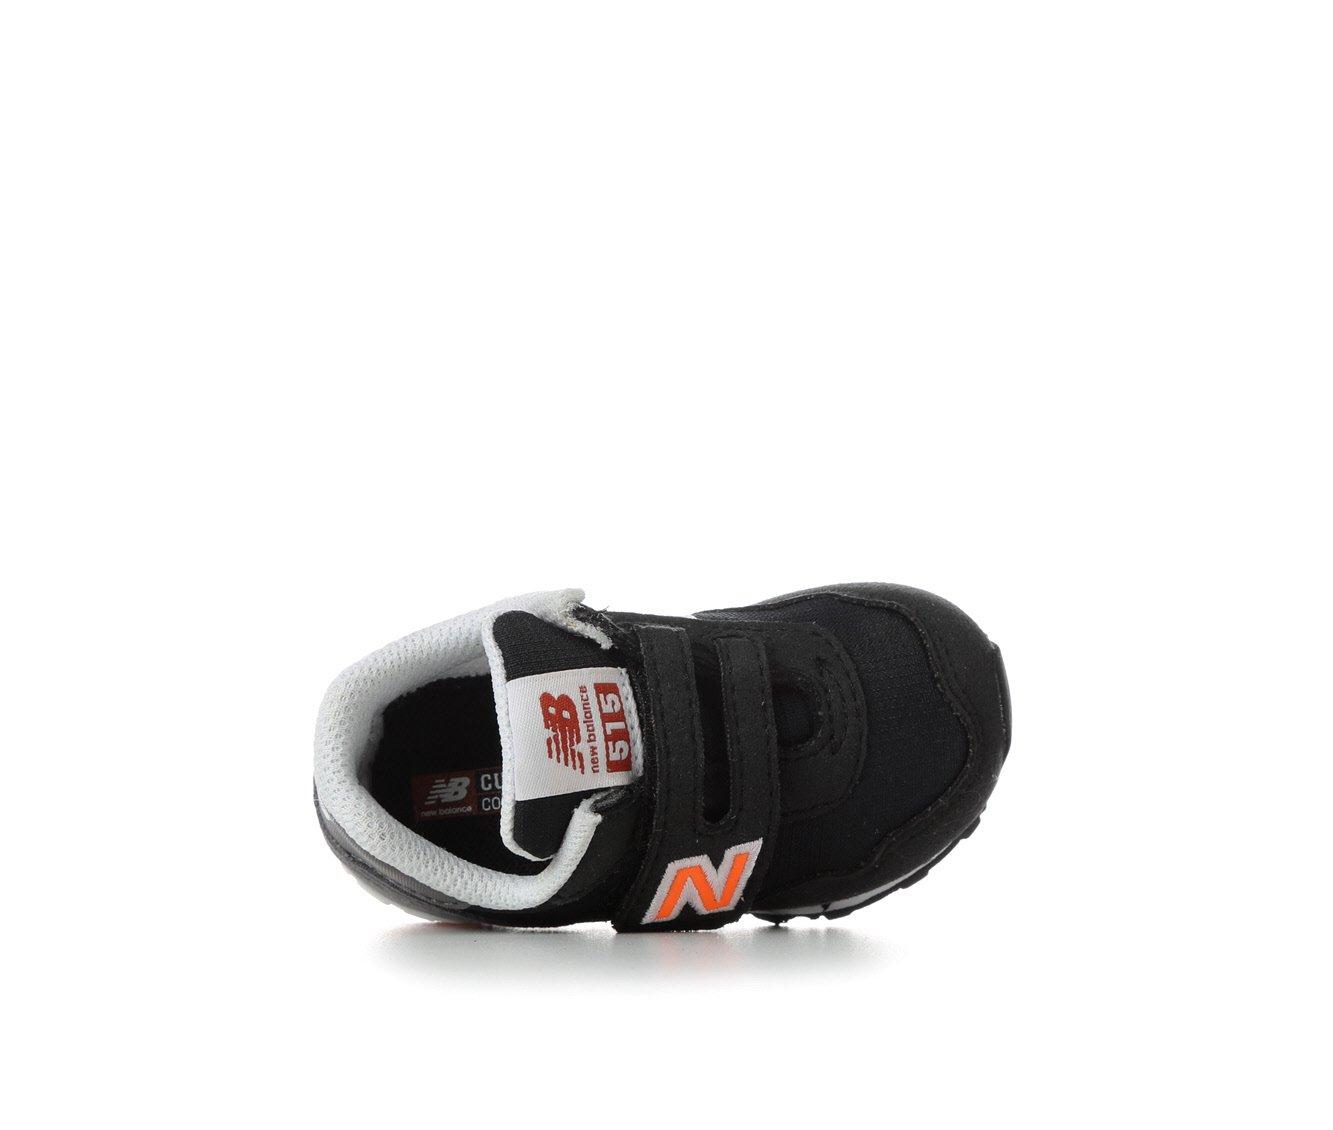 Onderscheid Beurs hoofdstad Boys' New Balance Infant & Toddler 515 IV515BT Running Shoes